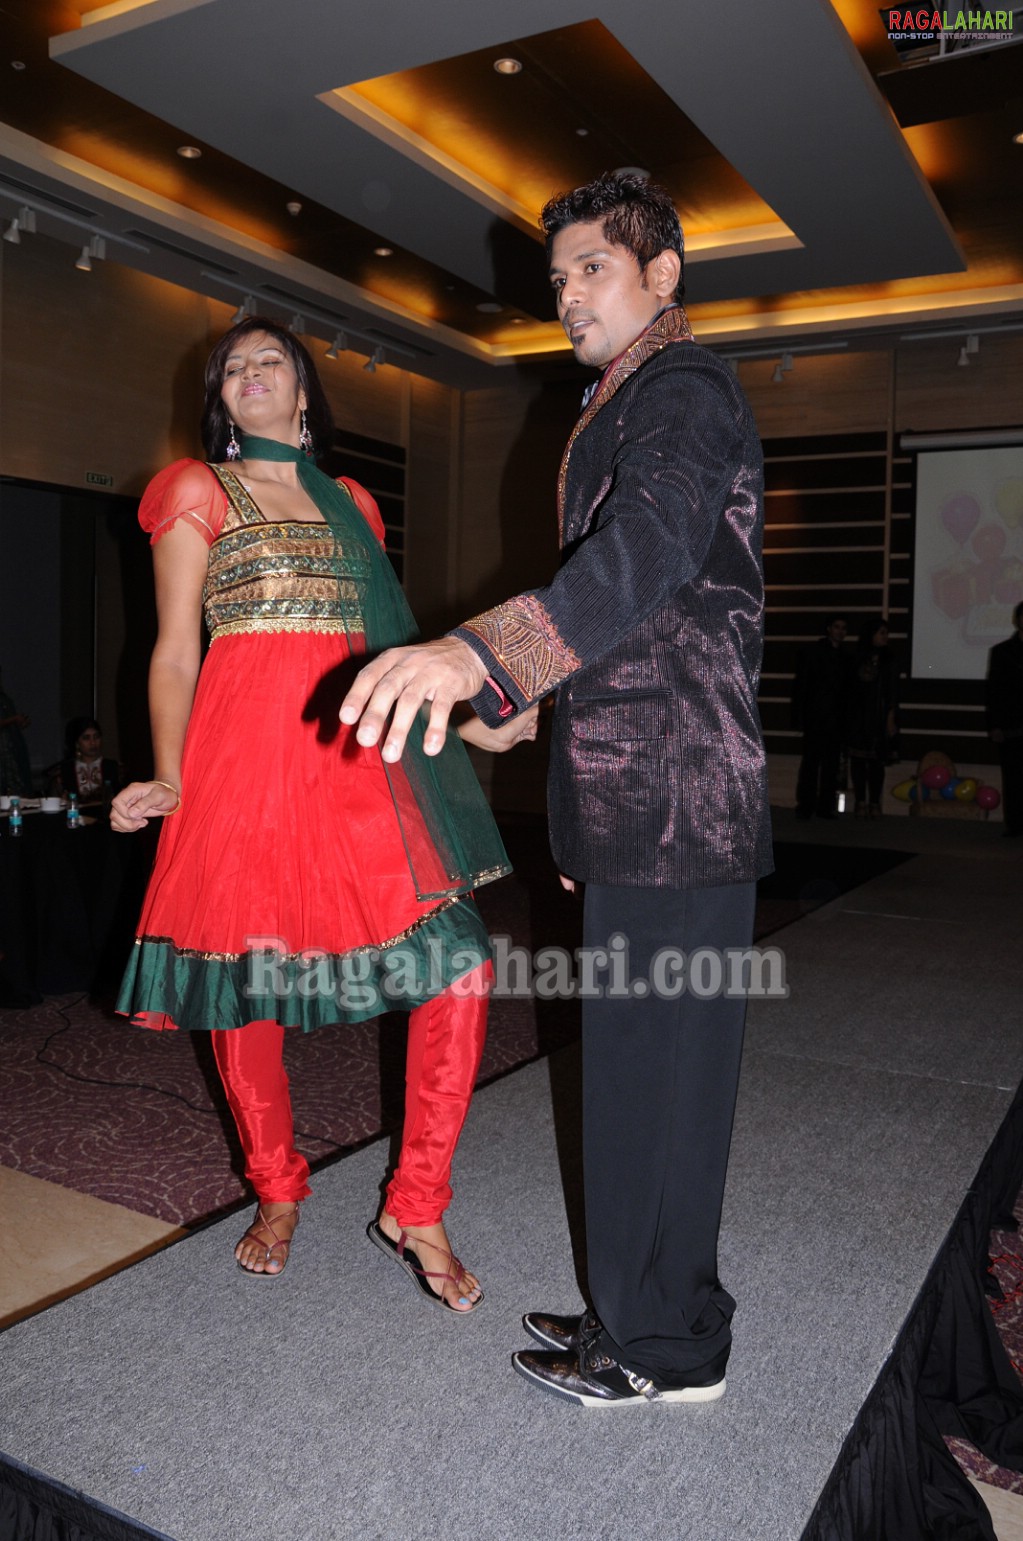 Hyderabad Page 3 Celebrity Chaitanya Birthday at Novotel Hotel in Shamshabad